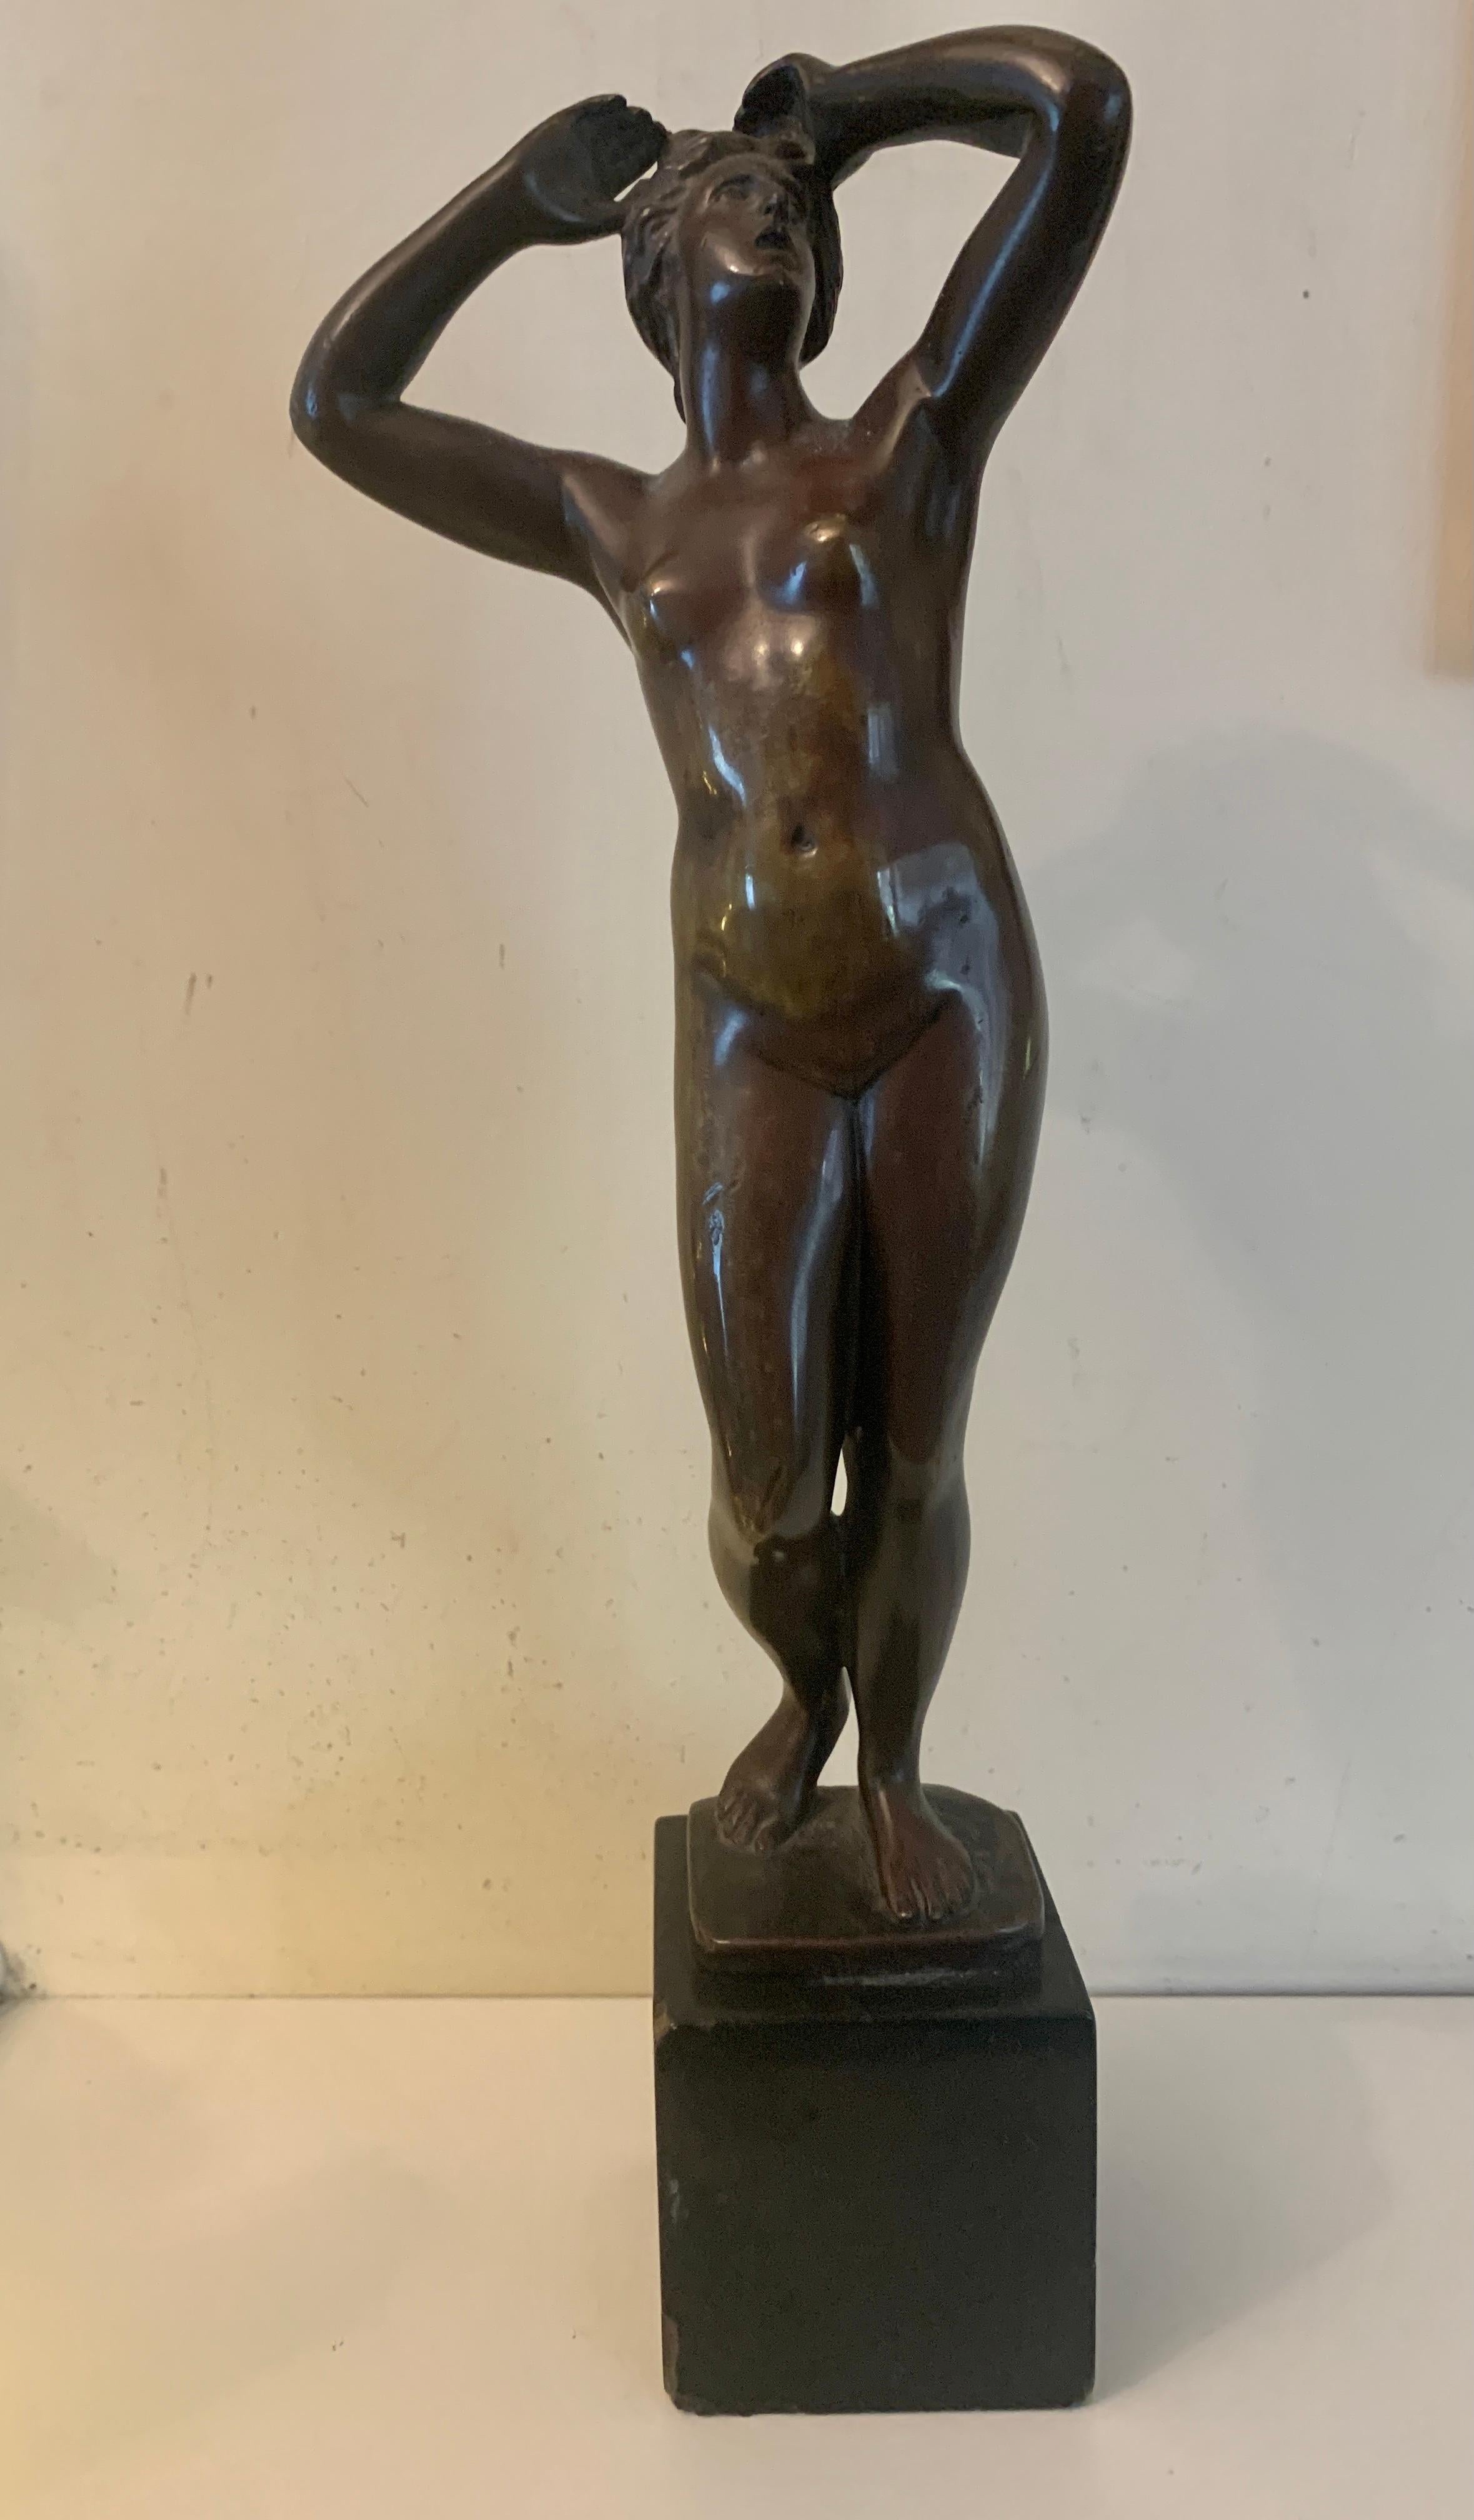 Cartinet Figurative Sculpture – Französische Bronze aus dem 19. Jahrhundert, die eine nackte Frau im Stehen zeigt.